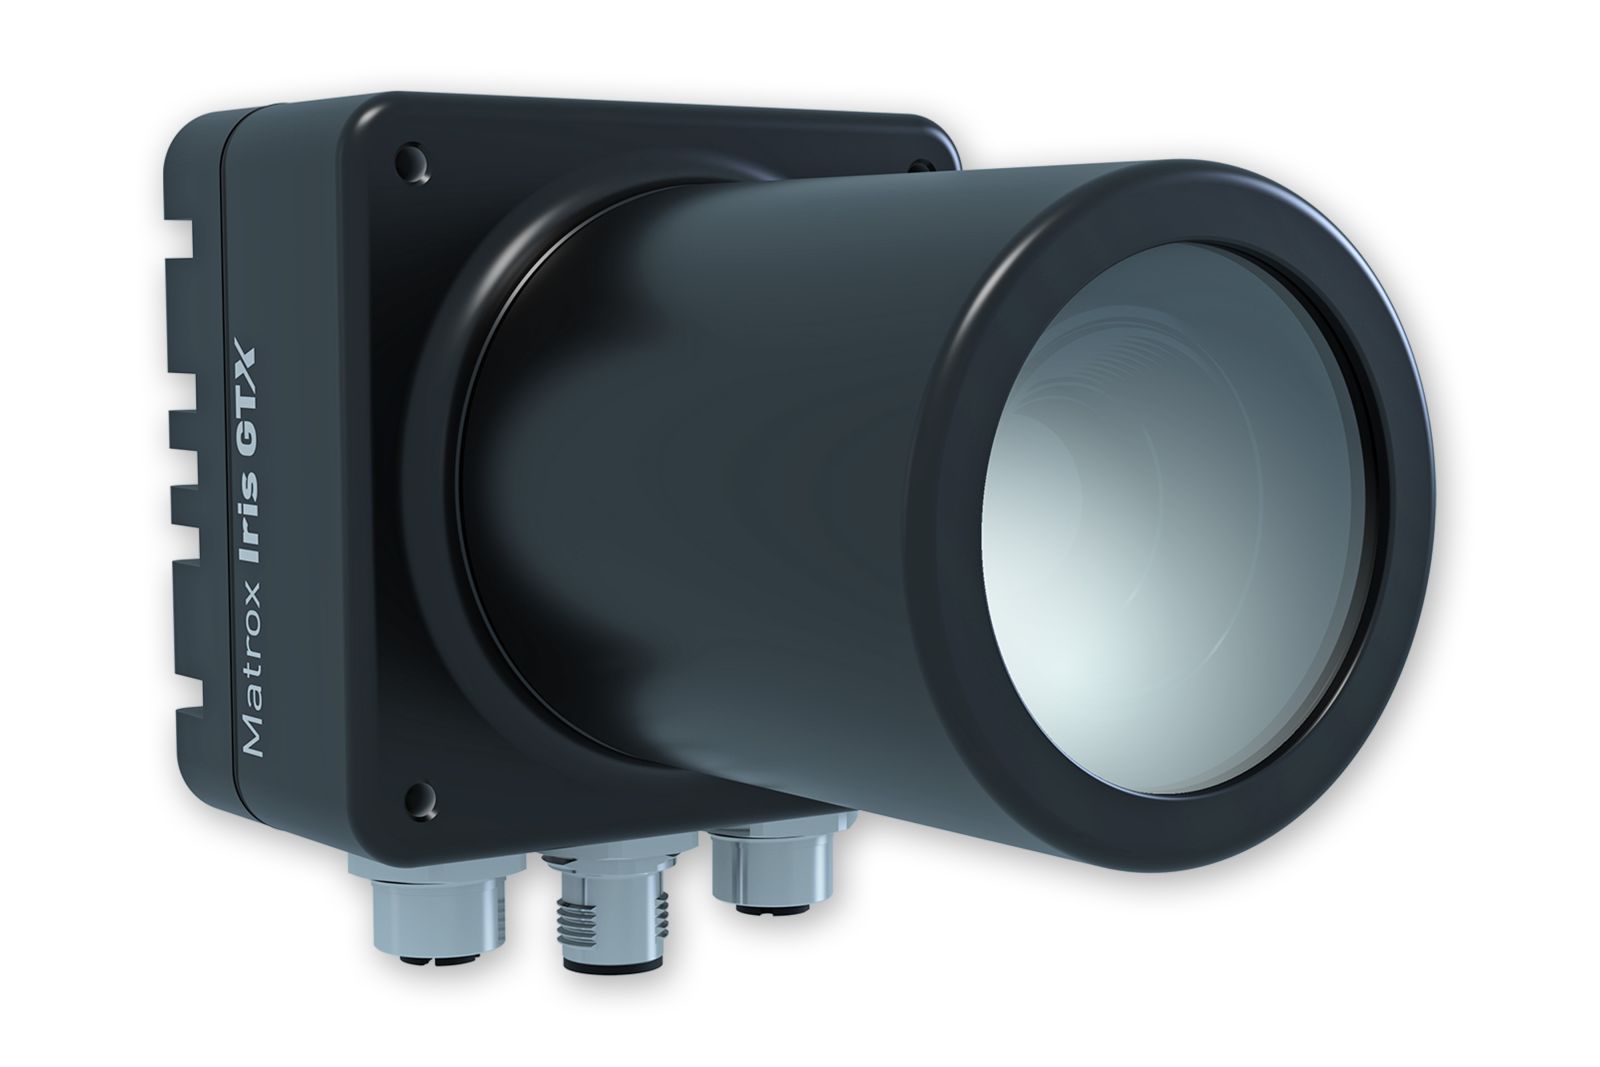 Zebra Iris GTX 5000C machine vision smart camera công nghiệp